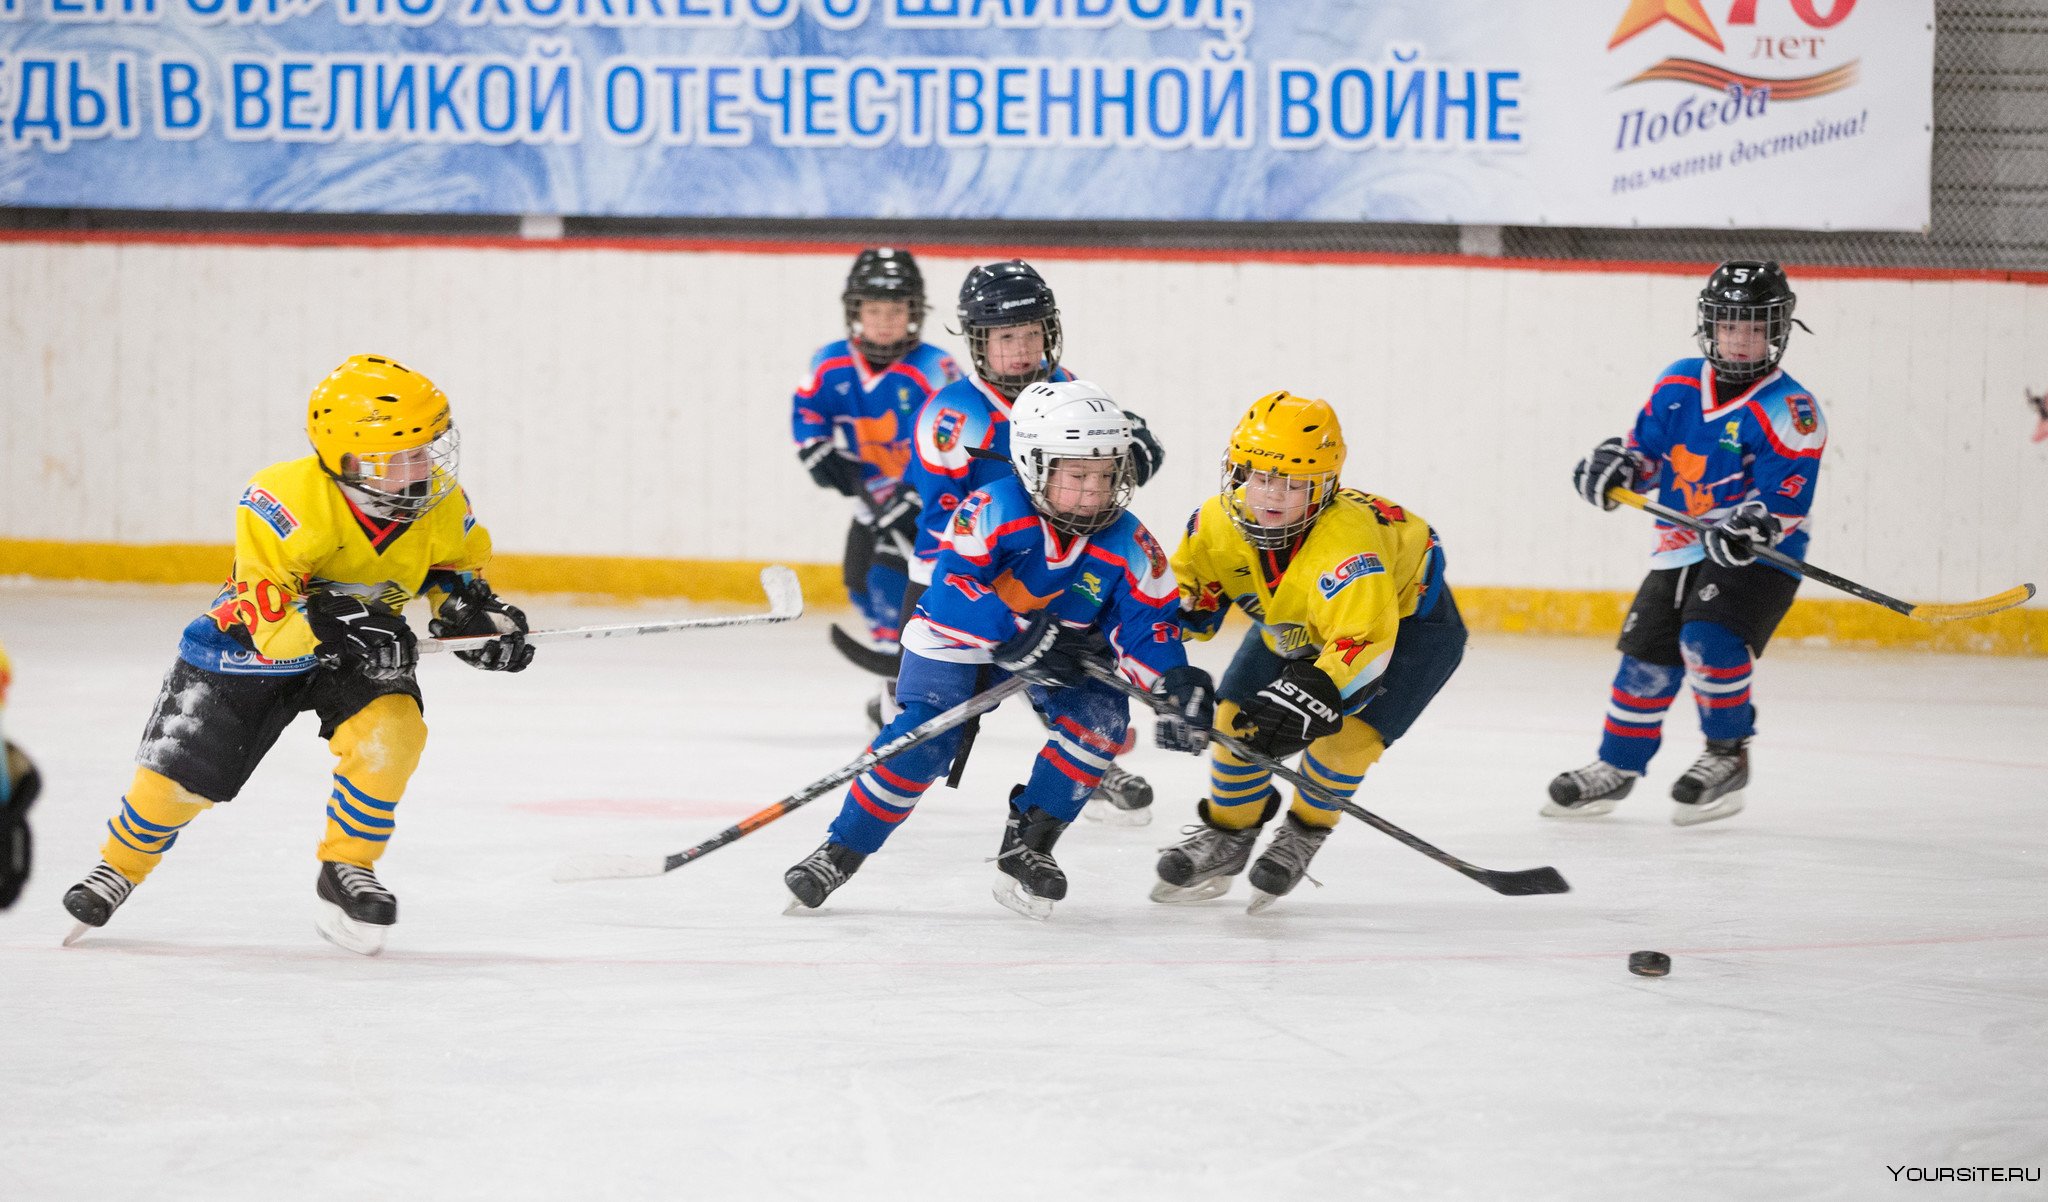 Onhockey ru